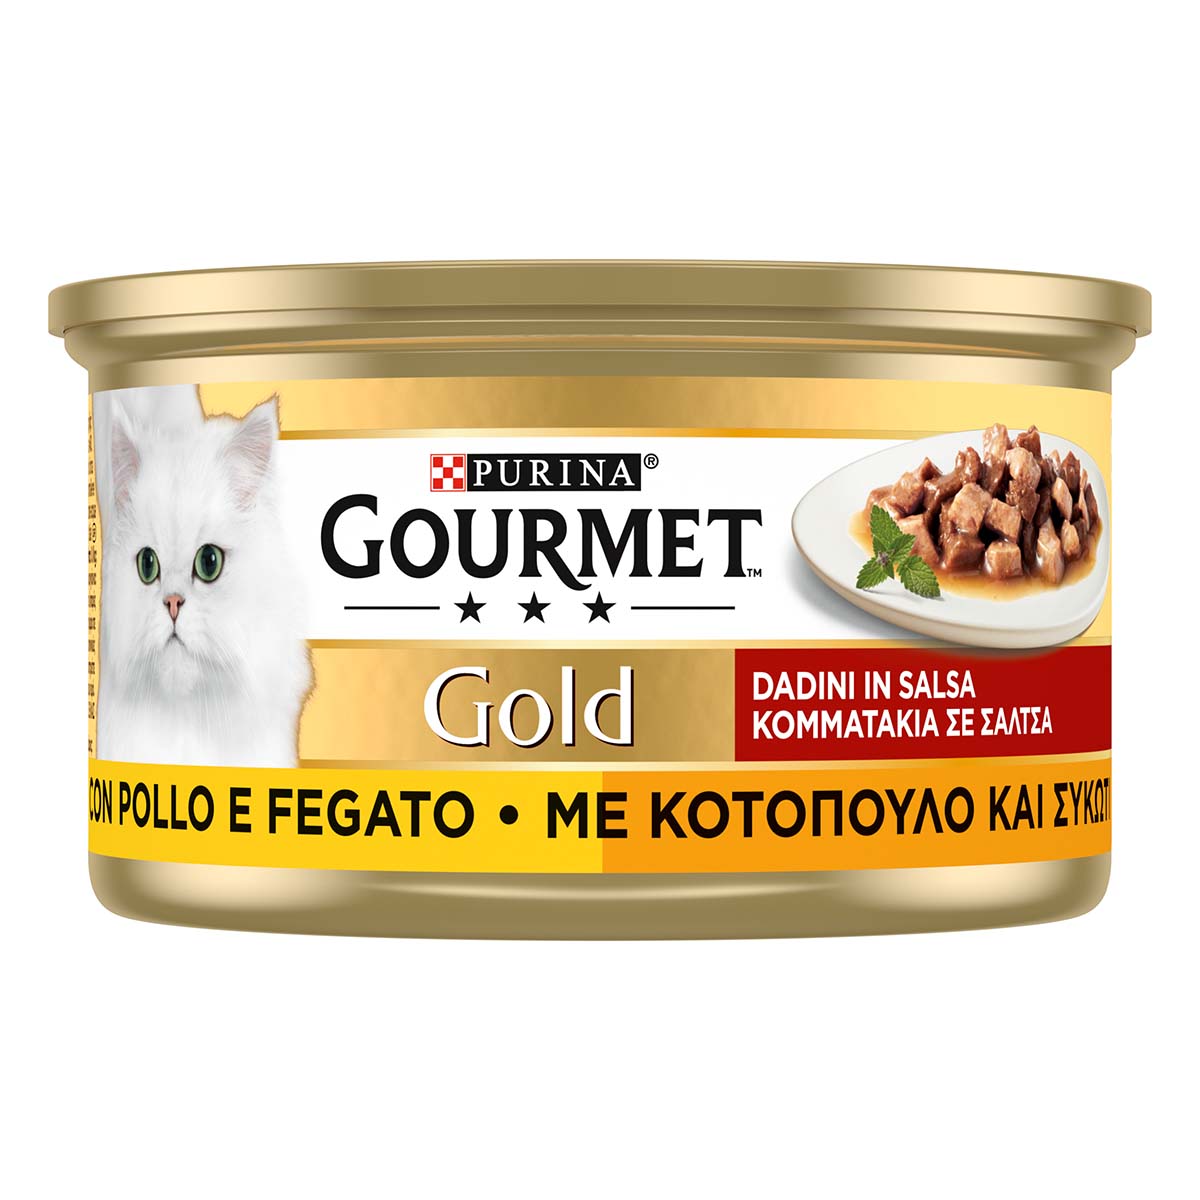 GOURMET GOLD Dadini con Pollo e Fegato